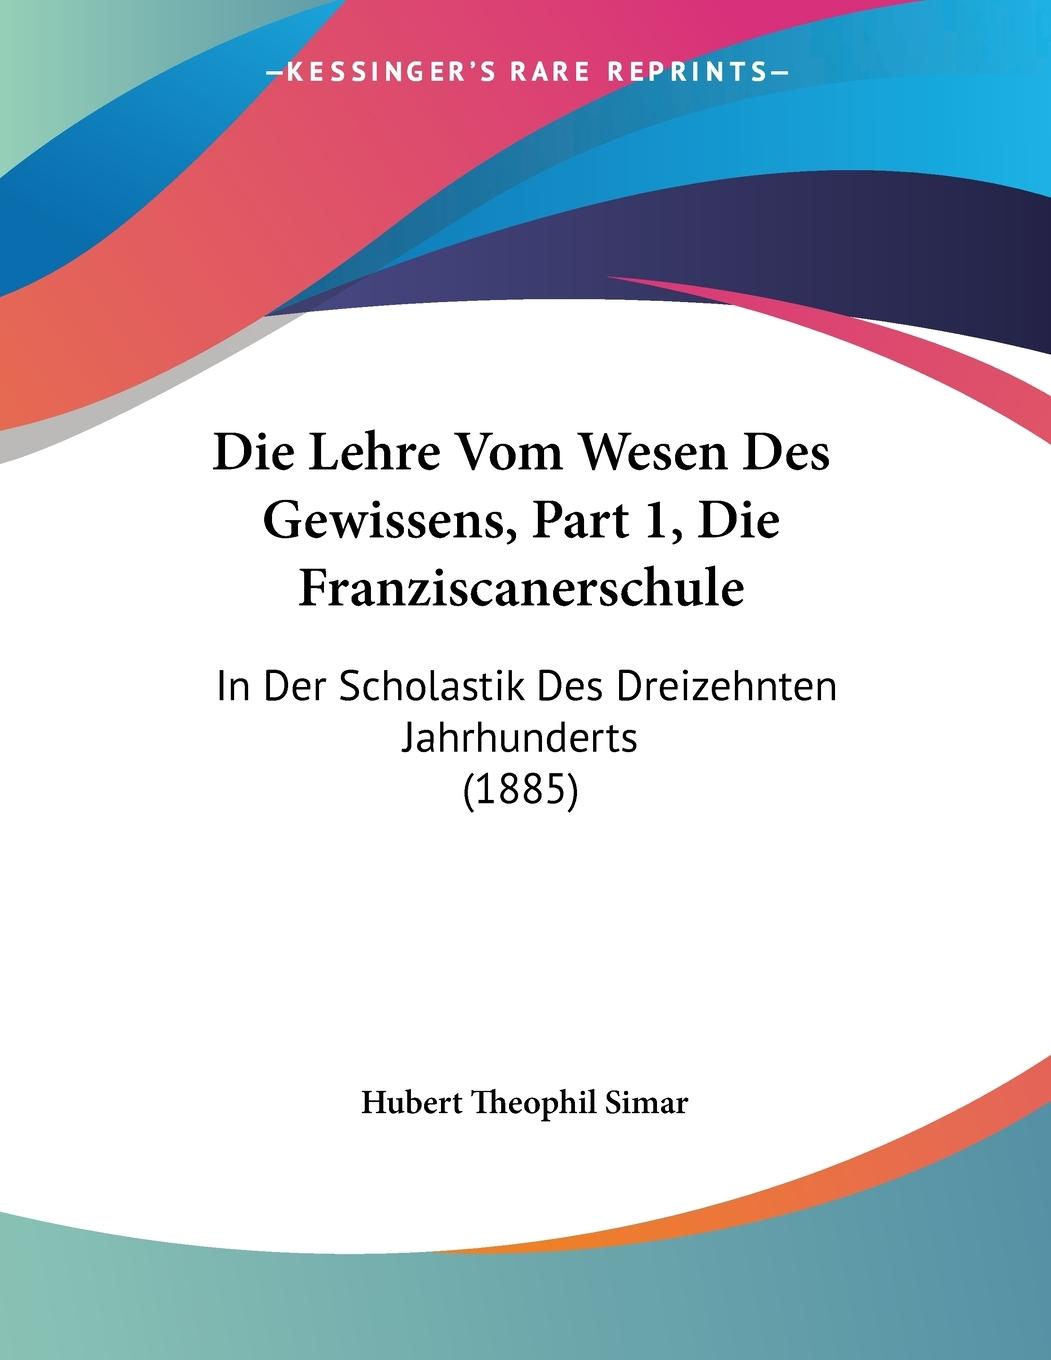 Die Lehre Vom Wesen Des Gewissens, Part 1, Die Franziscanerschule - Simar, Hubert Theophil